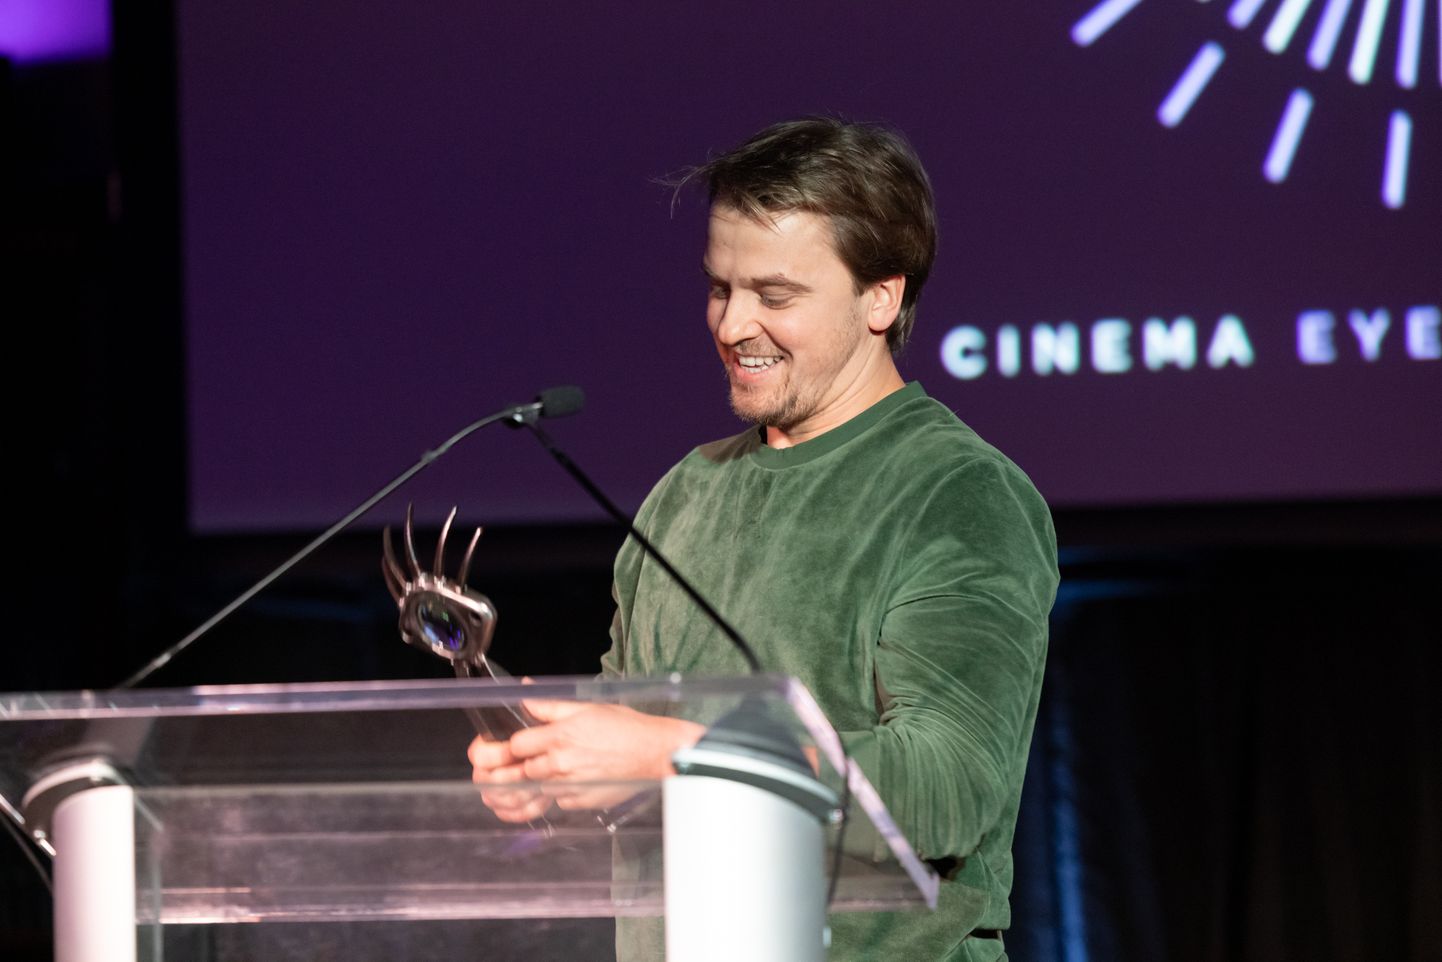 Väljapaistva operaatoritöö eest pälvis Cinema Eye Honors auhinna Eesti operaator Ants Tammik oma töö eest filmis «Savvusanna sõsarad».